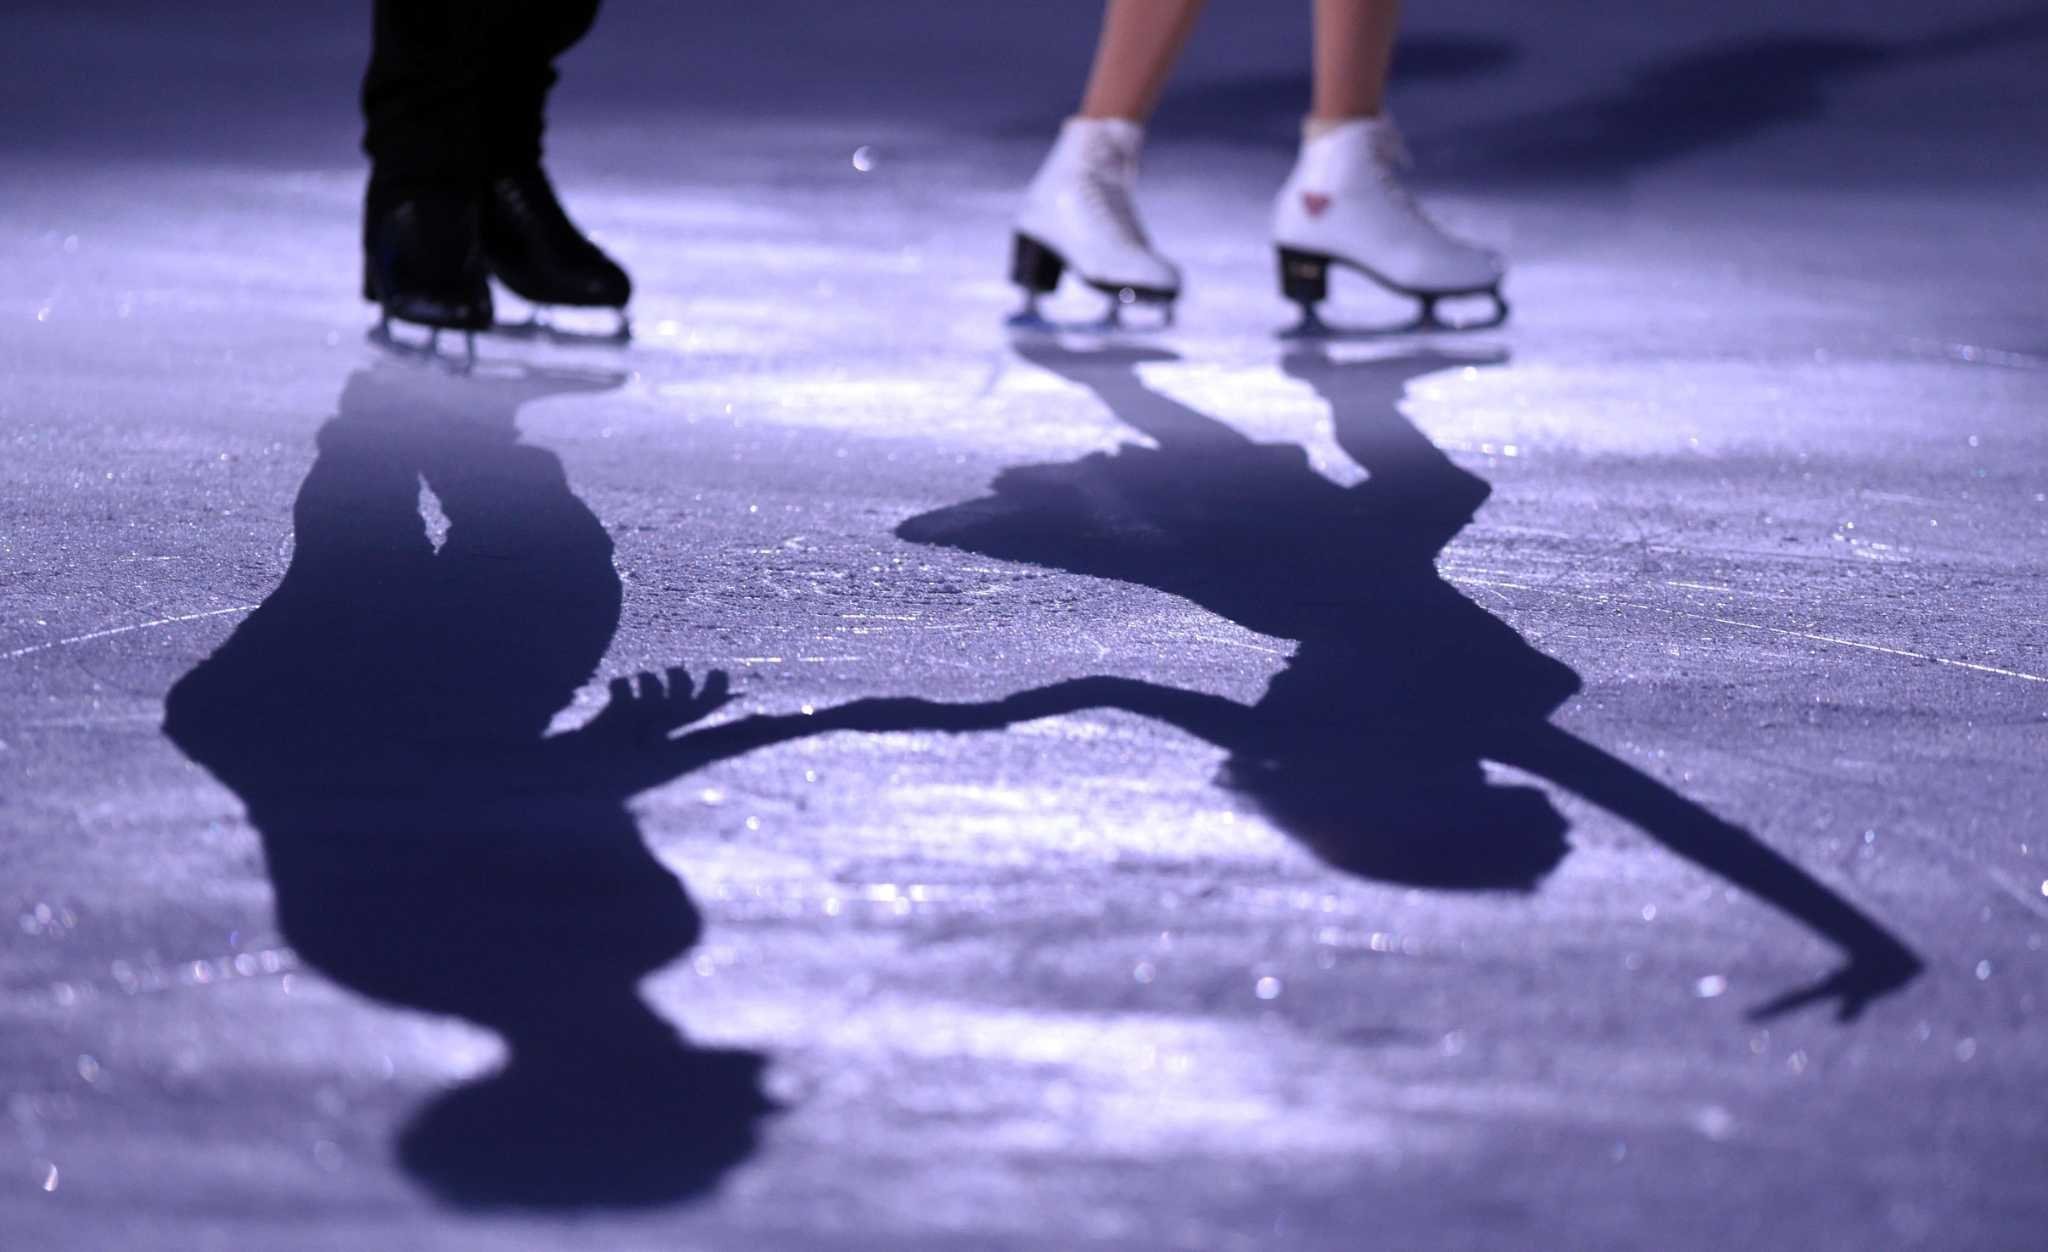 Созвездие фигурное катание. Коньки на льду. Фигурное катание на коньках. Лед фигурное катание. Фигуристы на коньках.